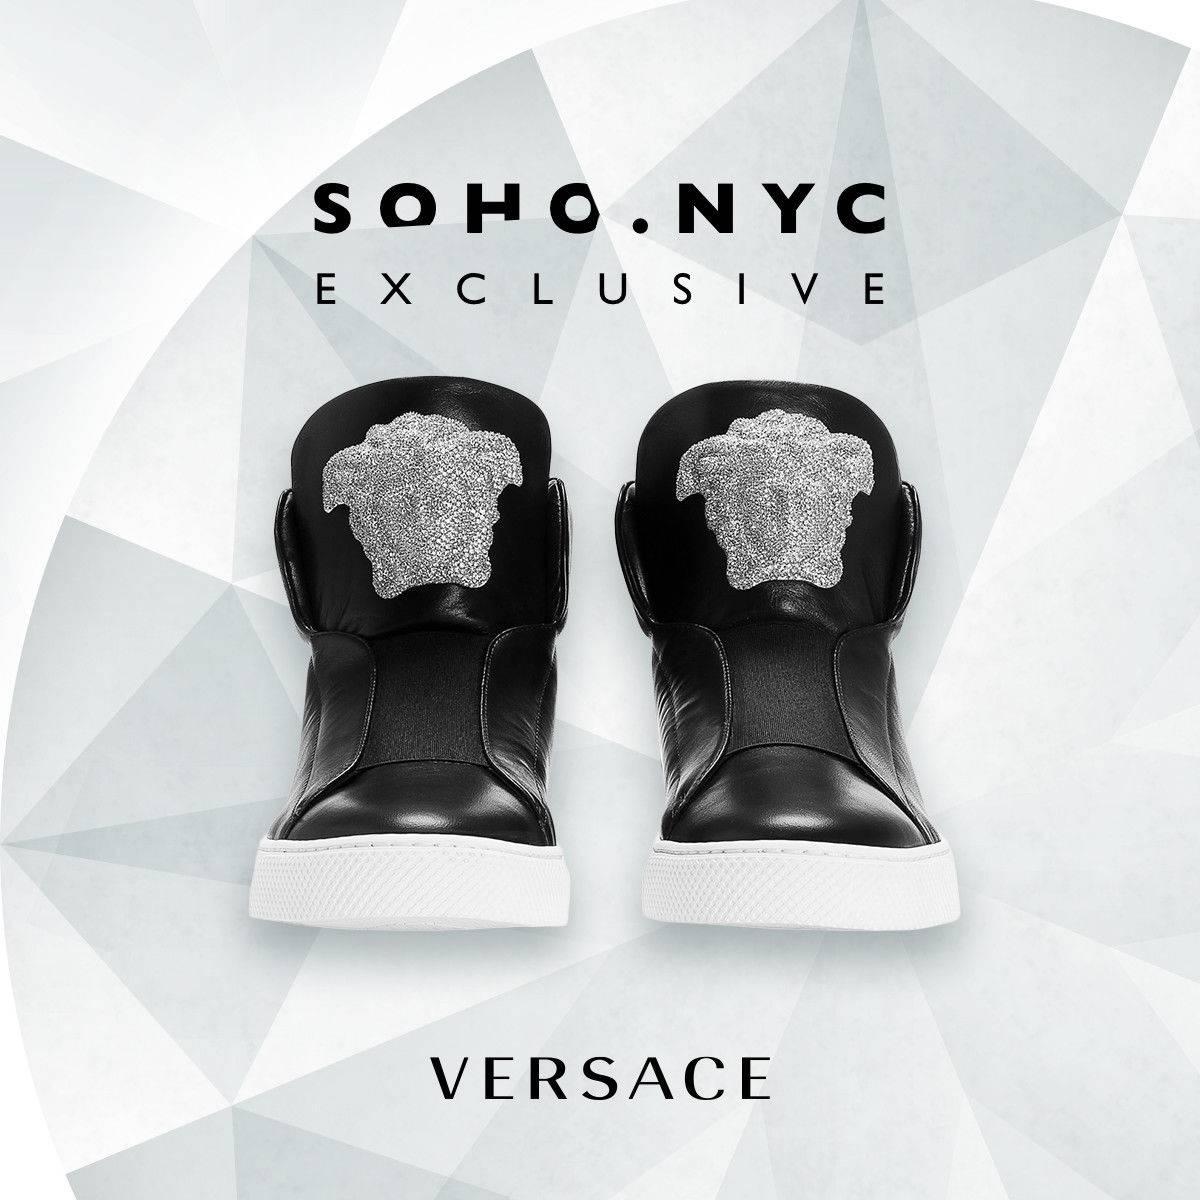 Versace SOHO Exklusive Crystal Embellished Black Leather Sneakers für Männer.

Der neue SoHo Exclusive Sneaker von Versace ist so ziemlich die Definition von Luxus. Der Schuh ist nicht nur aus feinstem Kalbsleder und hochwertigem Nappaleder